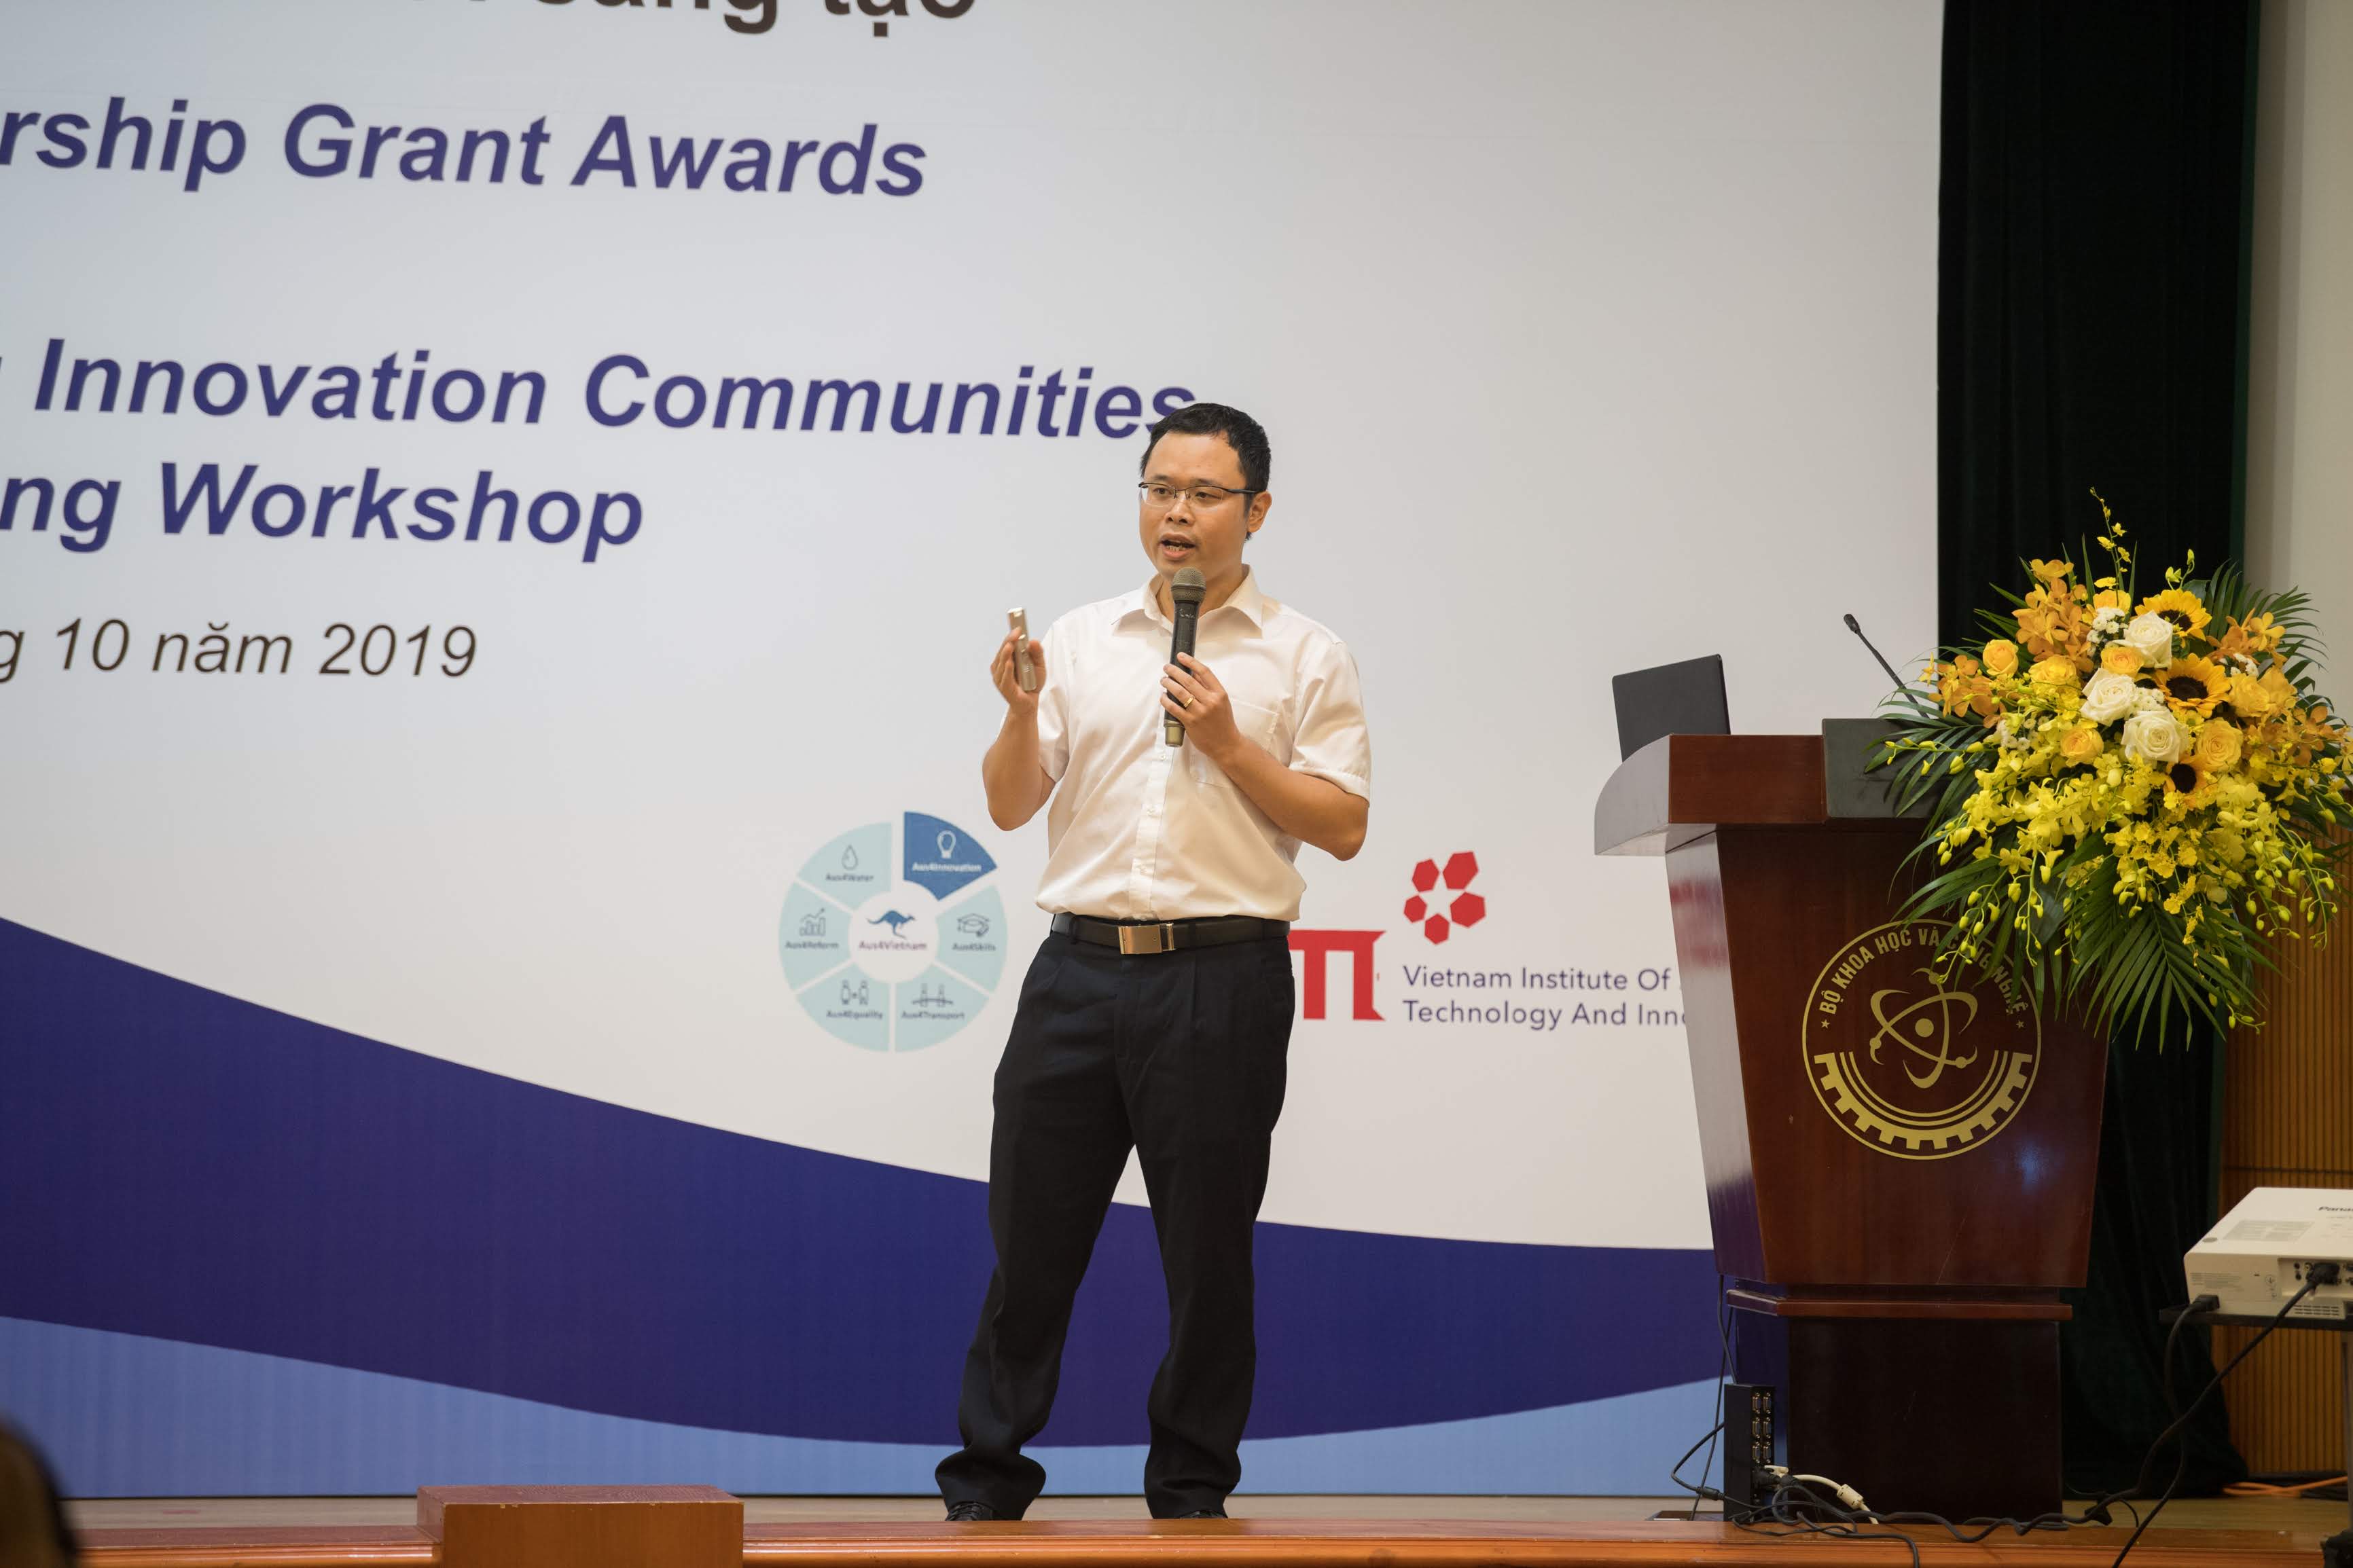 Ông Trần Vũ Tuấn Phan, Phó Giám đốc Trung tâm Dịch vụ KH&CN, thuộc Học viện Khoa học, Công nghệ và Đổi mới sáng tạo (VISTI), Bộ KH&CN, chia sẻ về mô hình Trung tâm Đổi mới sáng tạo. Ảnh: Bộ KH&CN